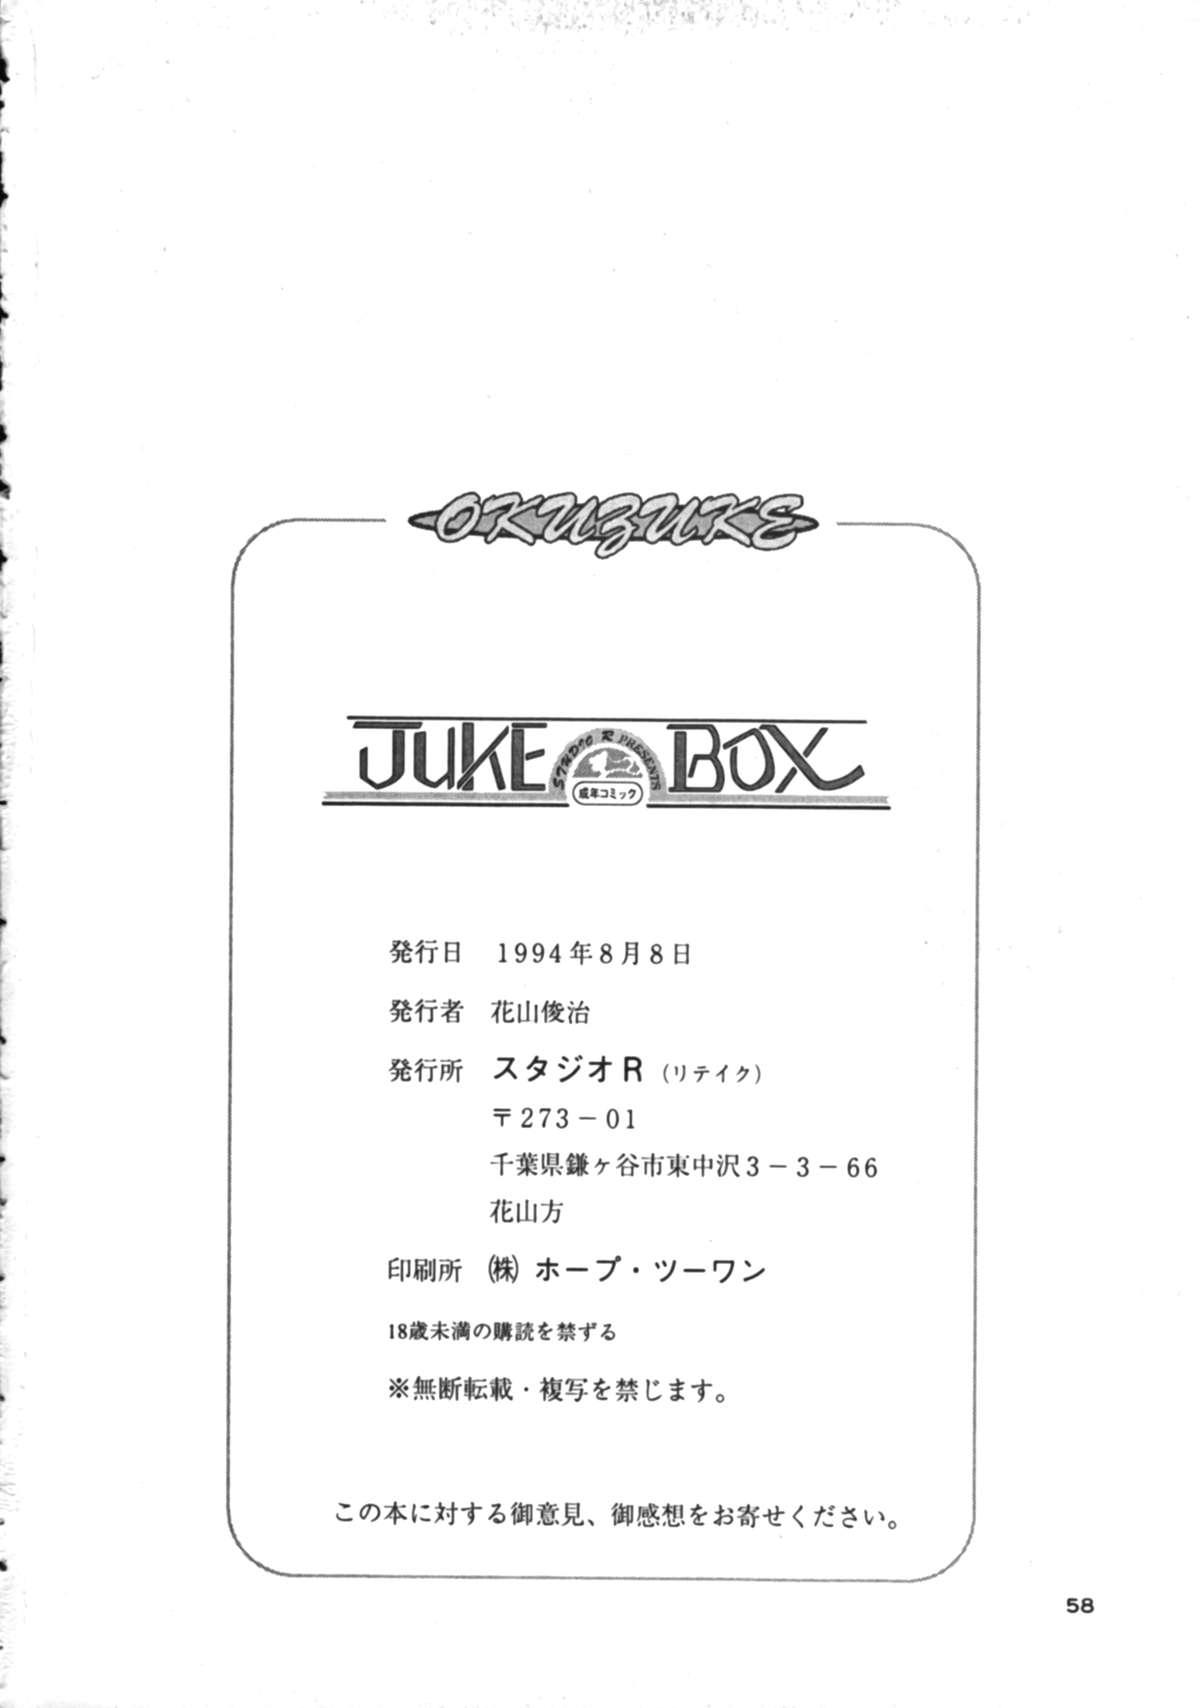 Juke Box 56